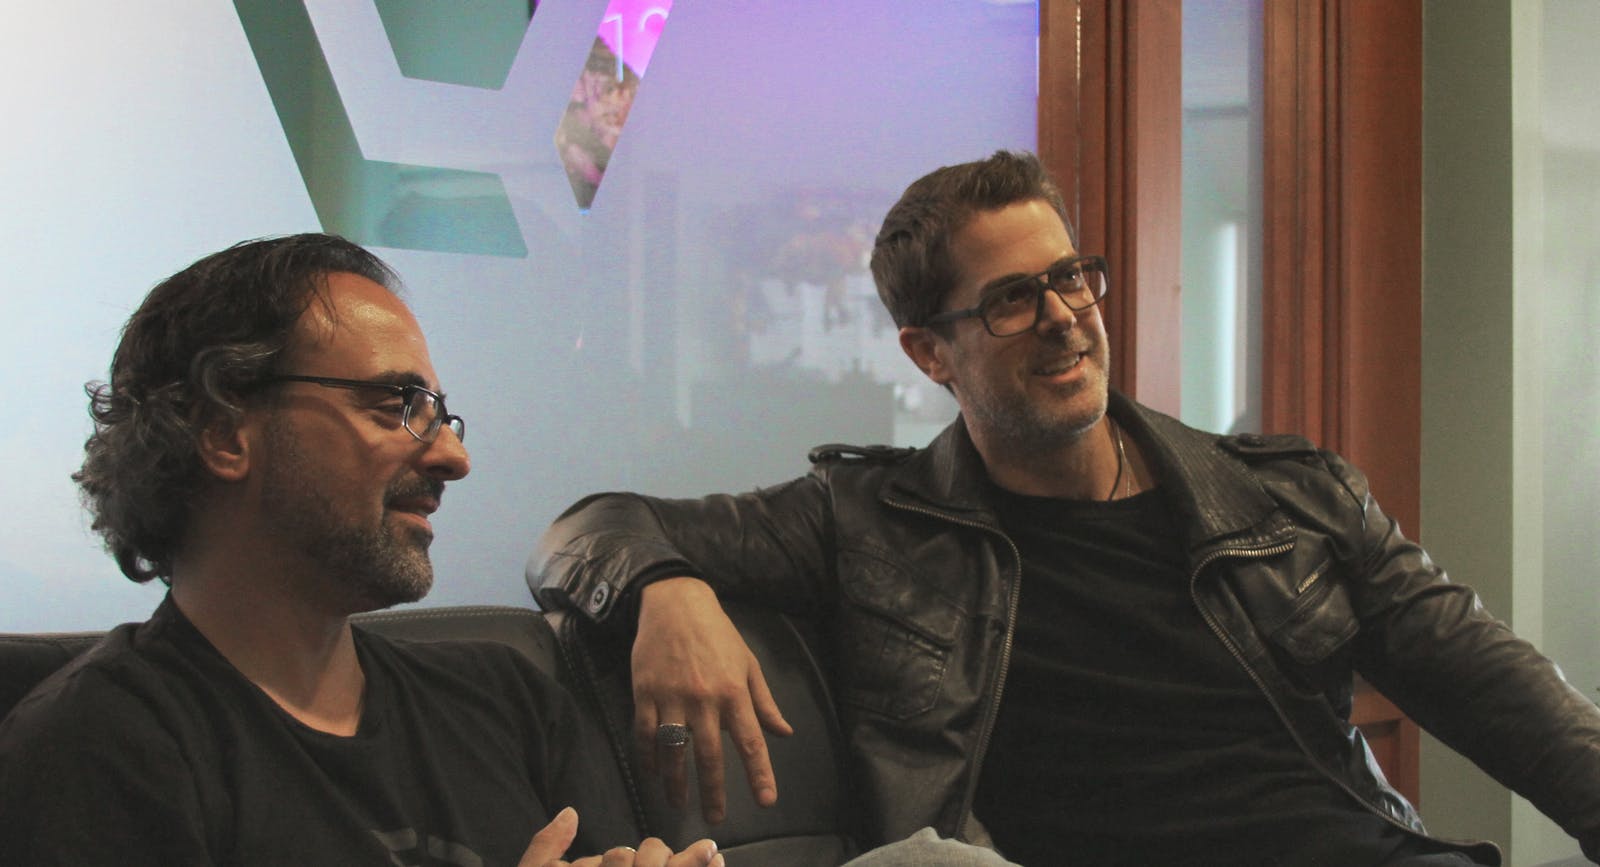 Cyanogen co-founders Steve Kondik, left, and Kirt McMaster. Photo by Cyanogen